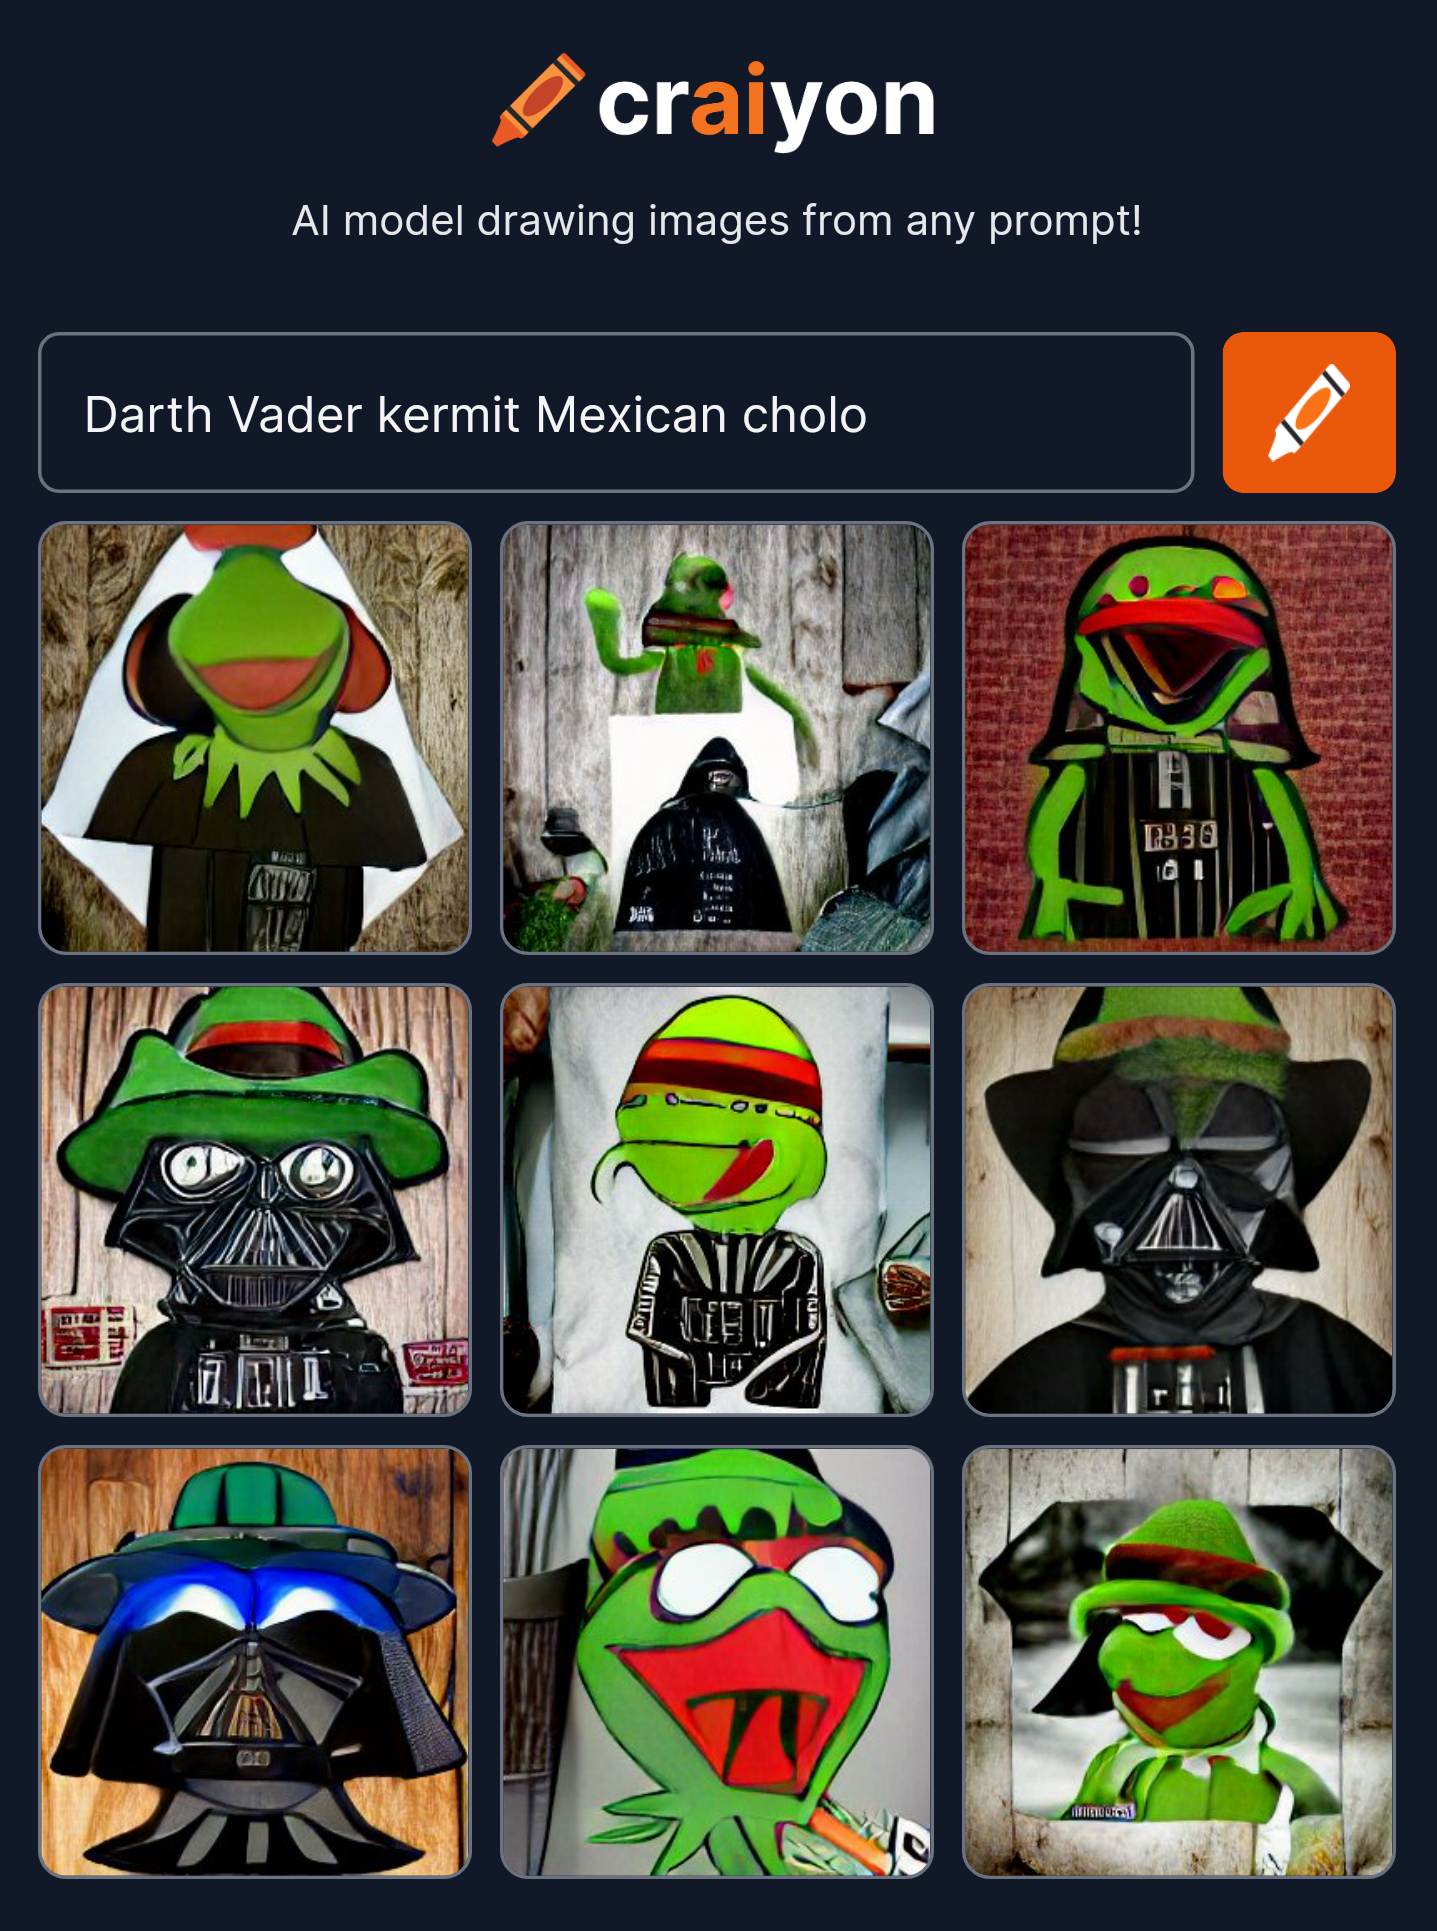 craiyon_204230_Darth_Vader_kermit_Mexican_cholo.png